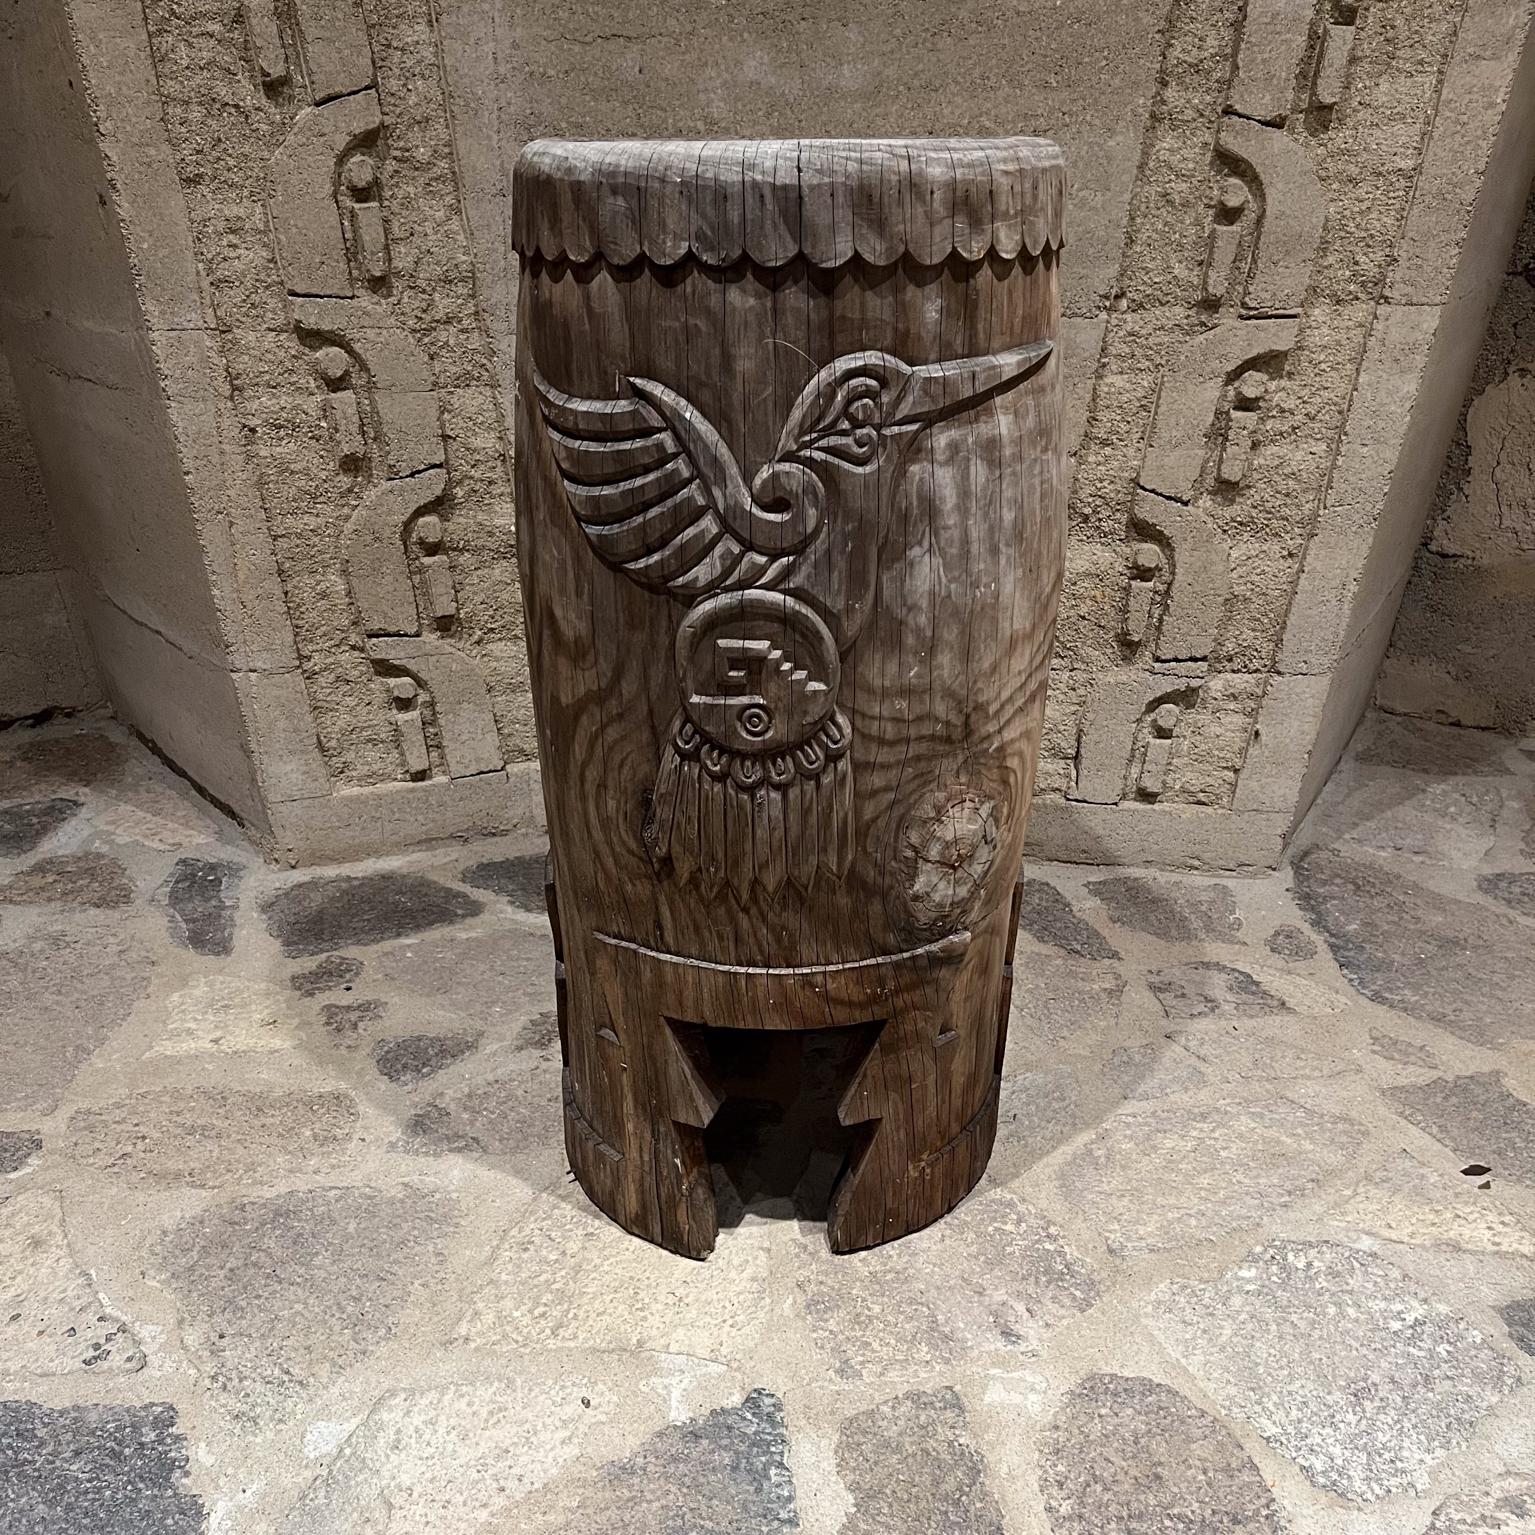 Pédale de tambour de danse pour la musique aztèque indigène
Tambour en bois sculpté à la main
32,5 h x 15,75 diamètre
Etat original non restauré.
Se référer aux images présentées.